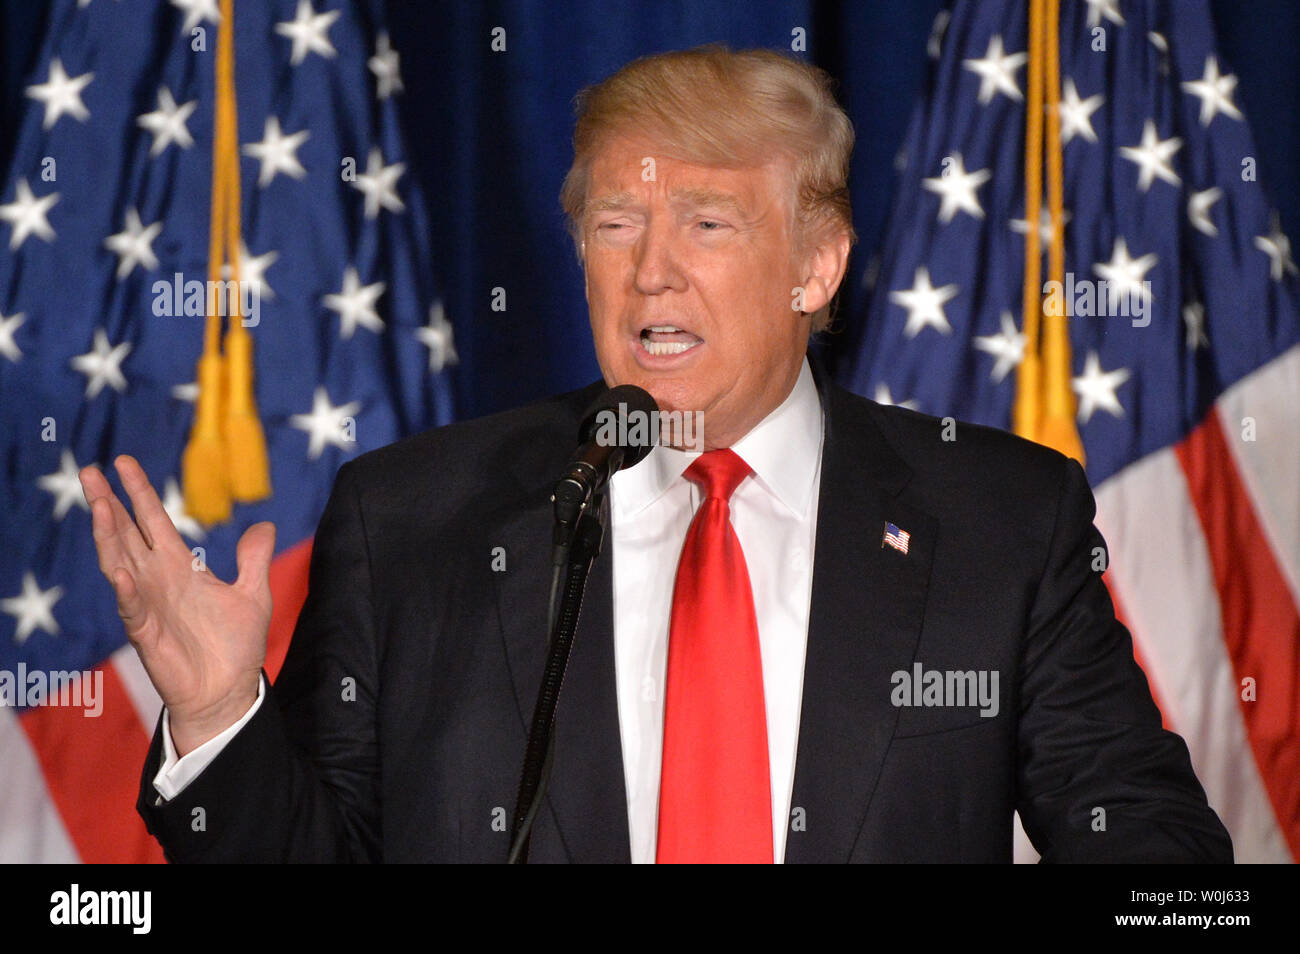 Candidato presidenziale repubblicano Donald Trump offre un indirizzo che delinea la sua politica estera agenda, a Washington D.C. il 27 aprile 2016. Foto di Kevin Dietsch/UPI Foto Stock